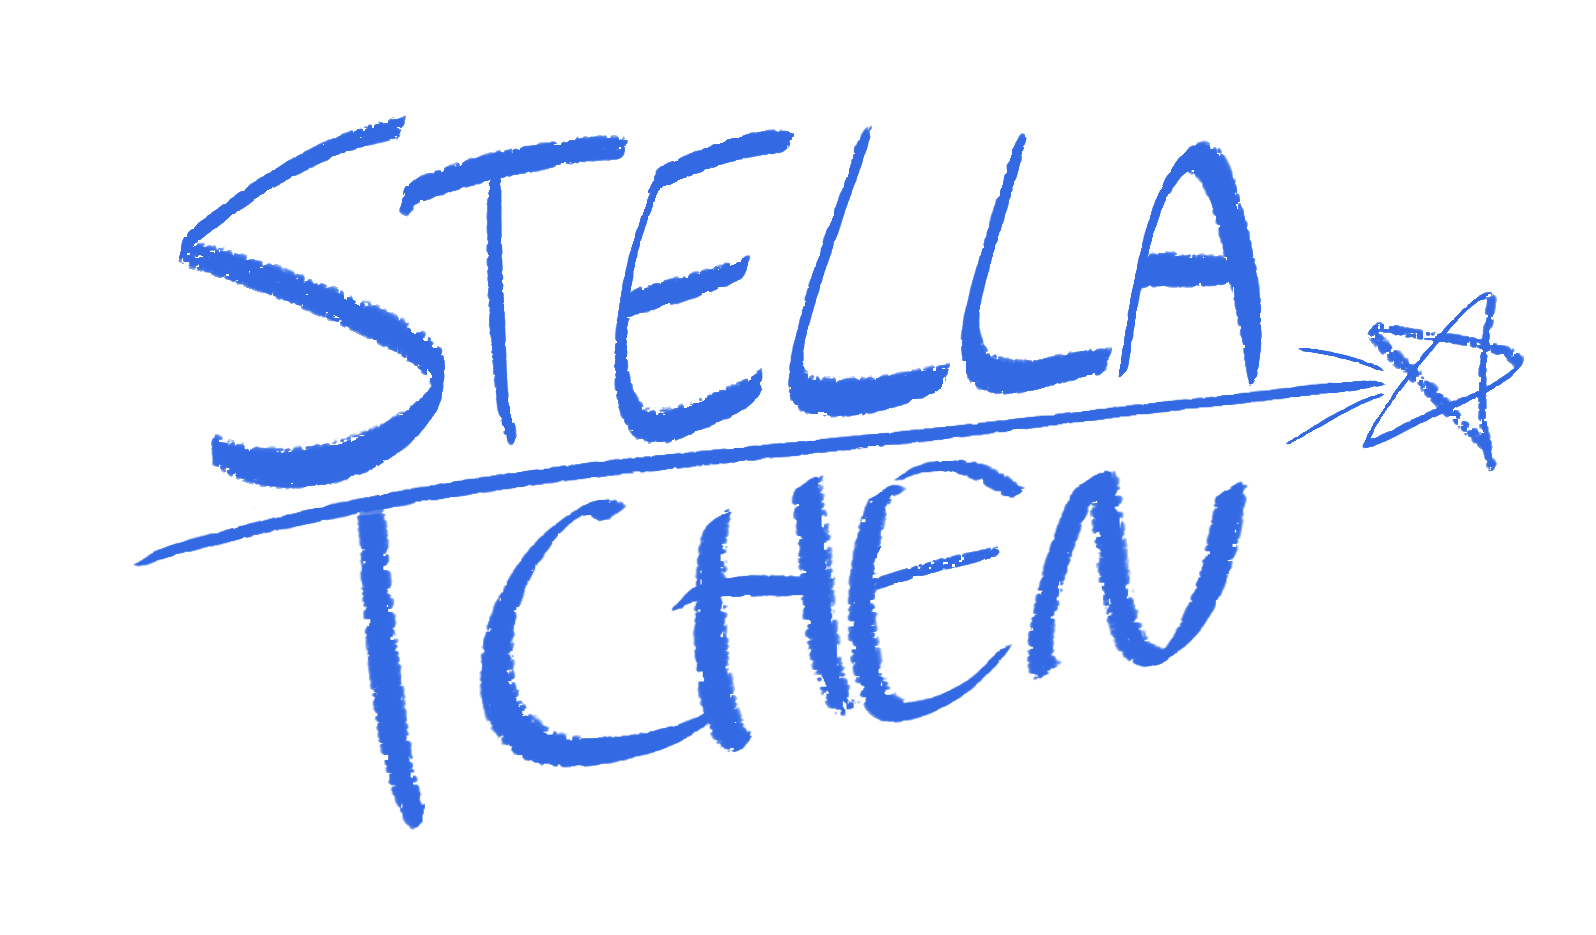 Stella Tchen